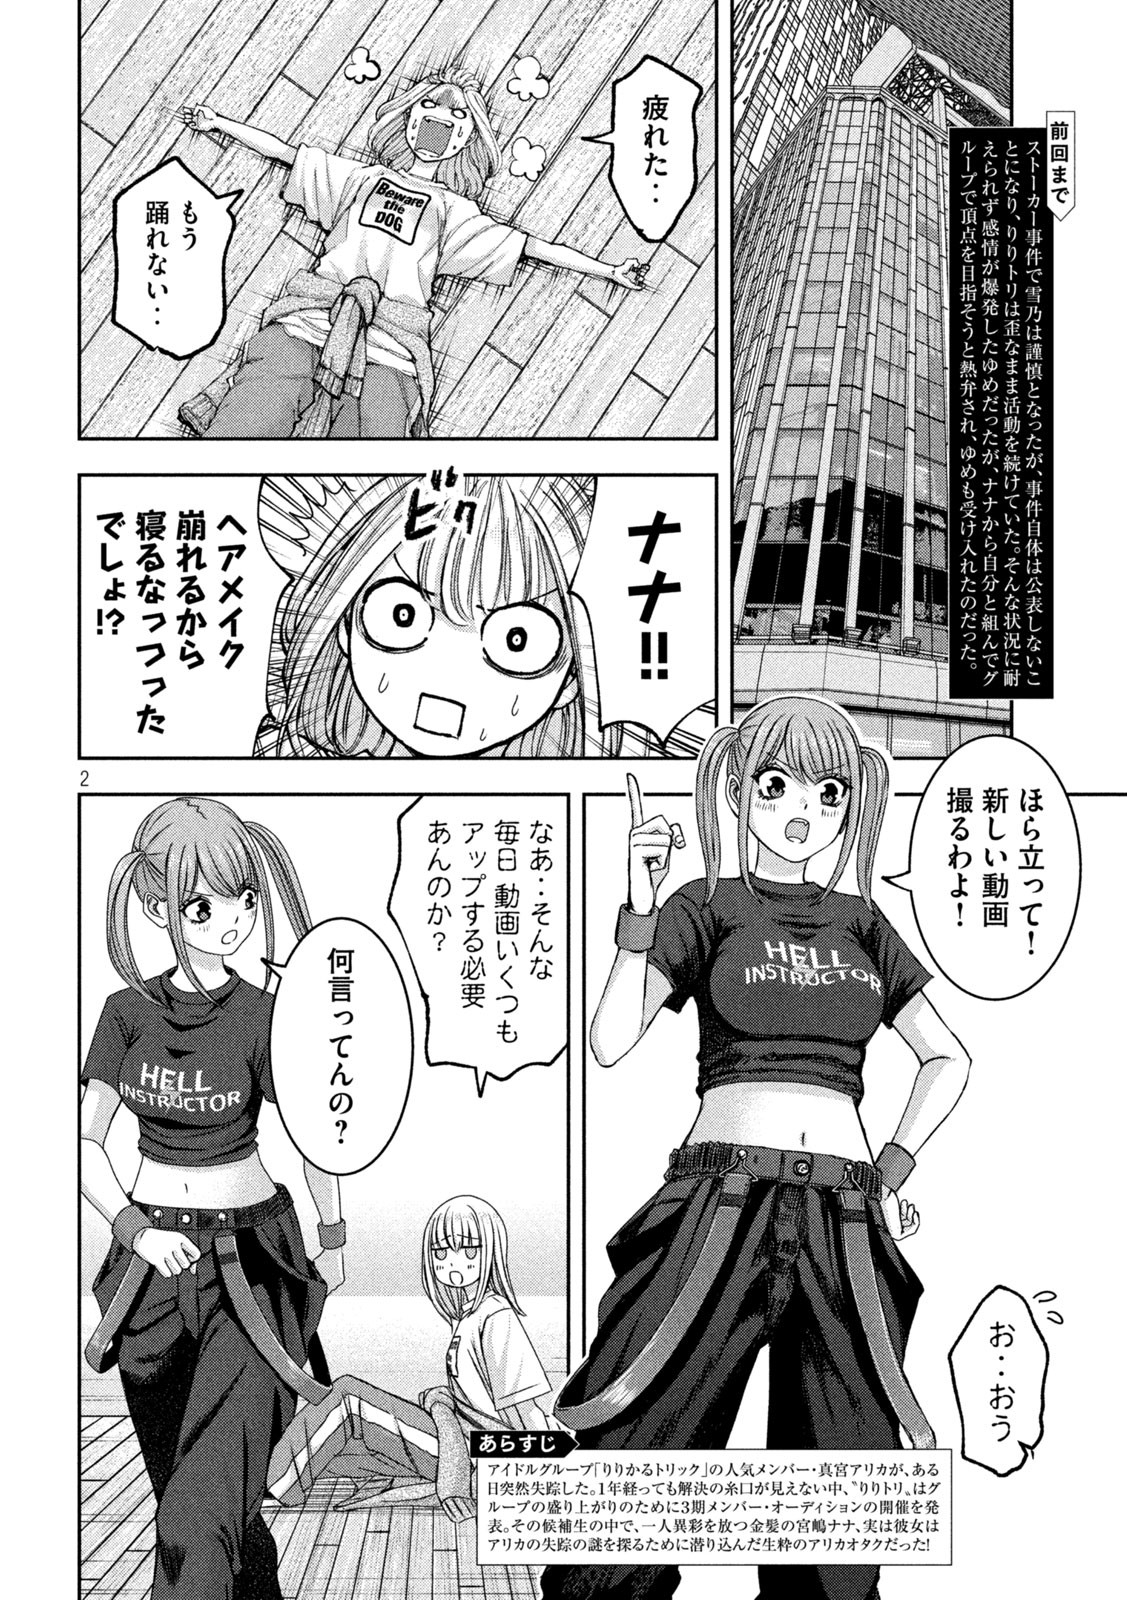 Watashi no Arika - Chapter 37 - Page 2